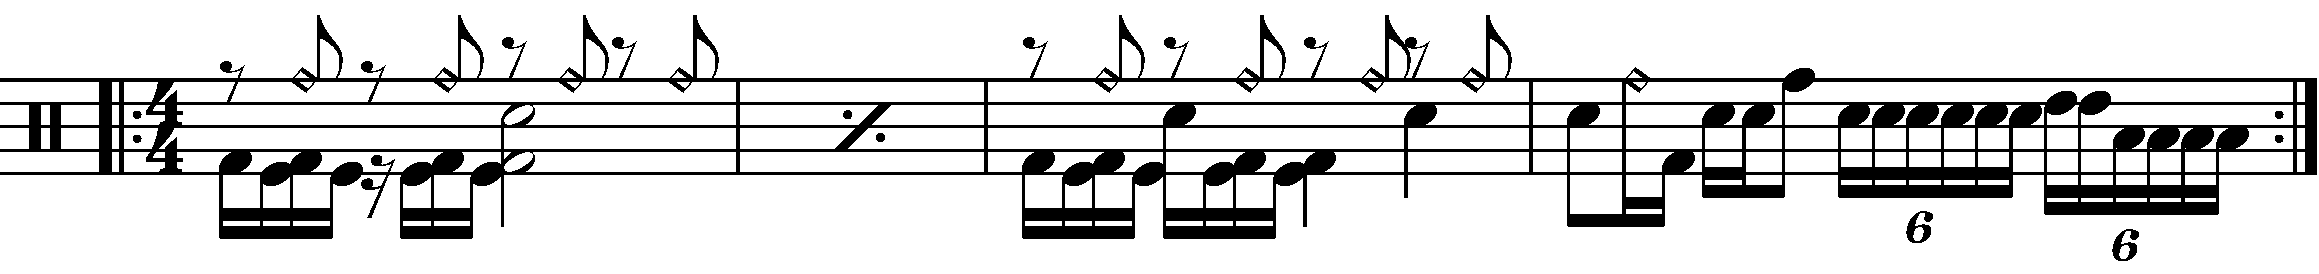 A four bar phrase based on a rhythmic double kick part